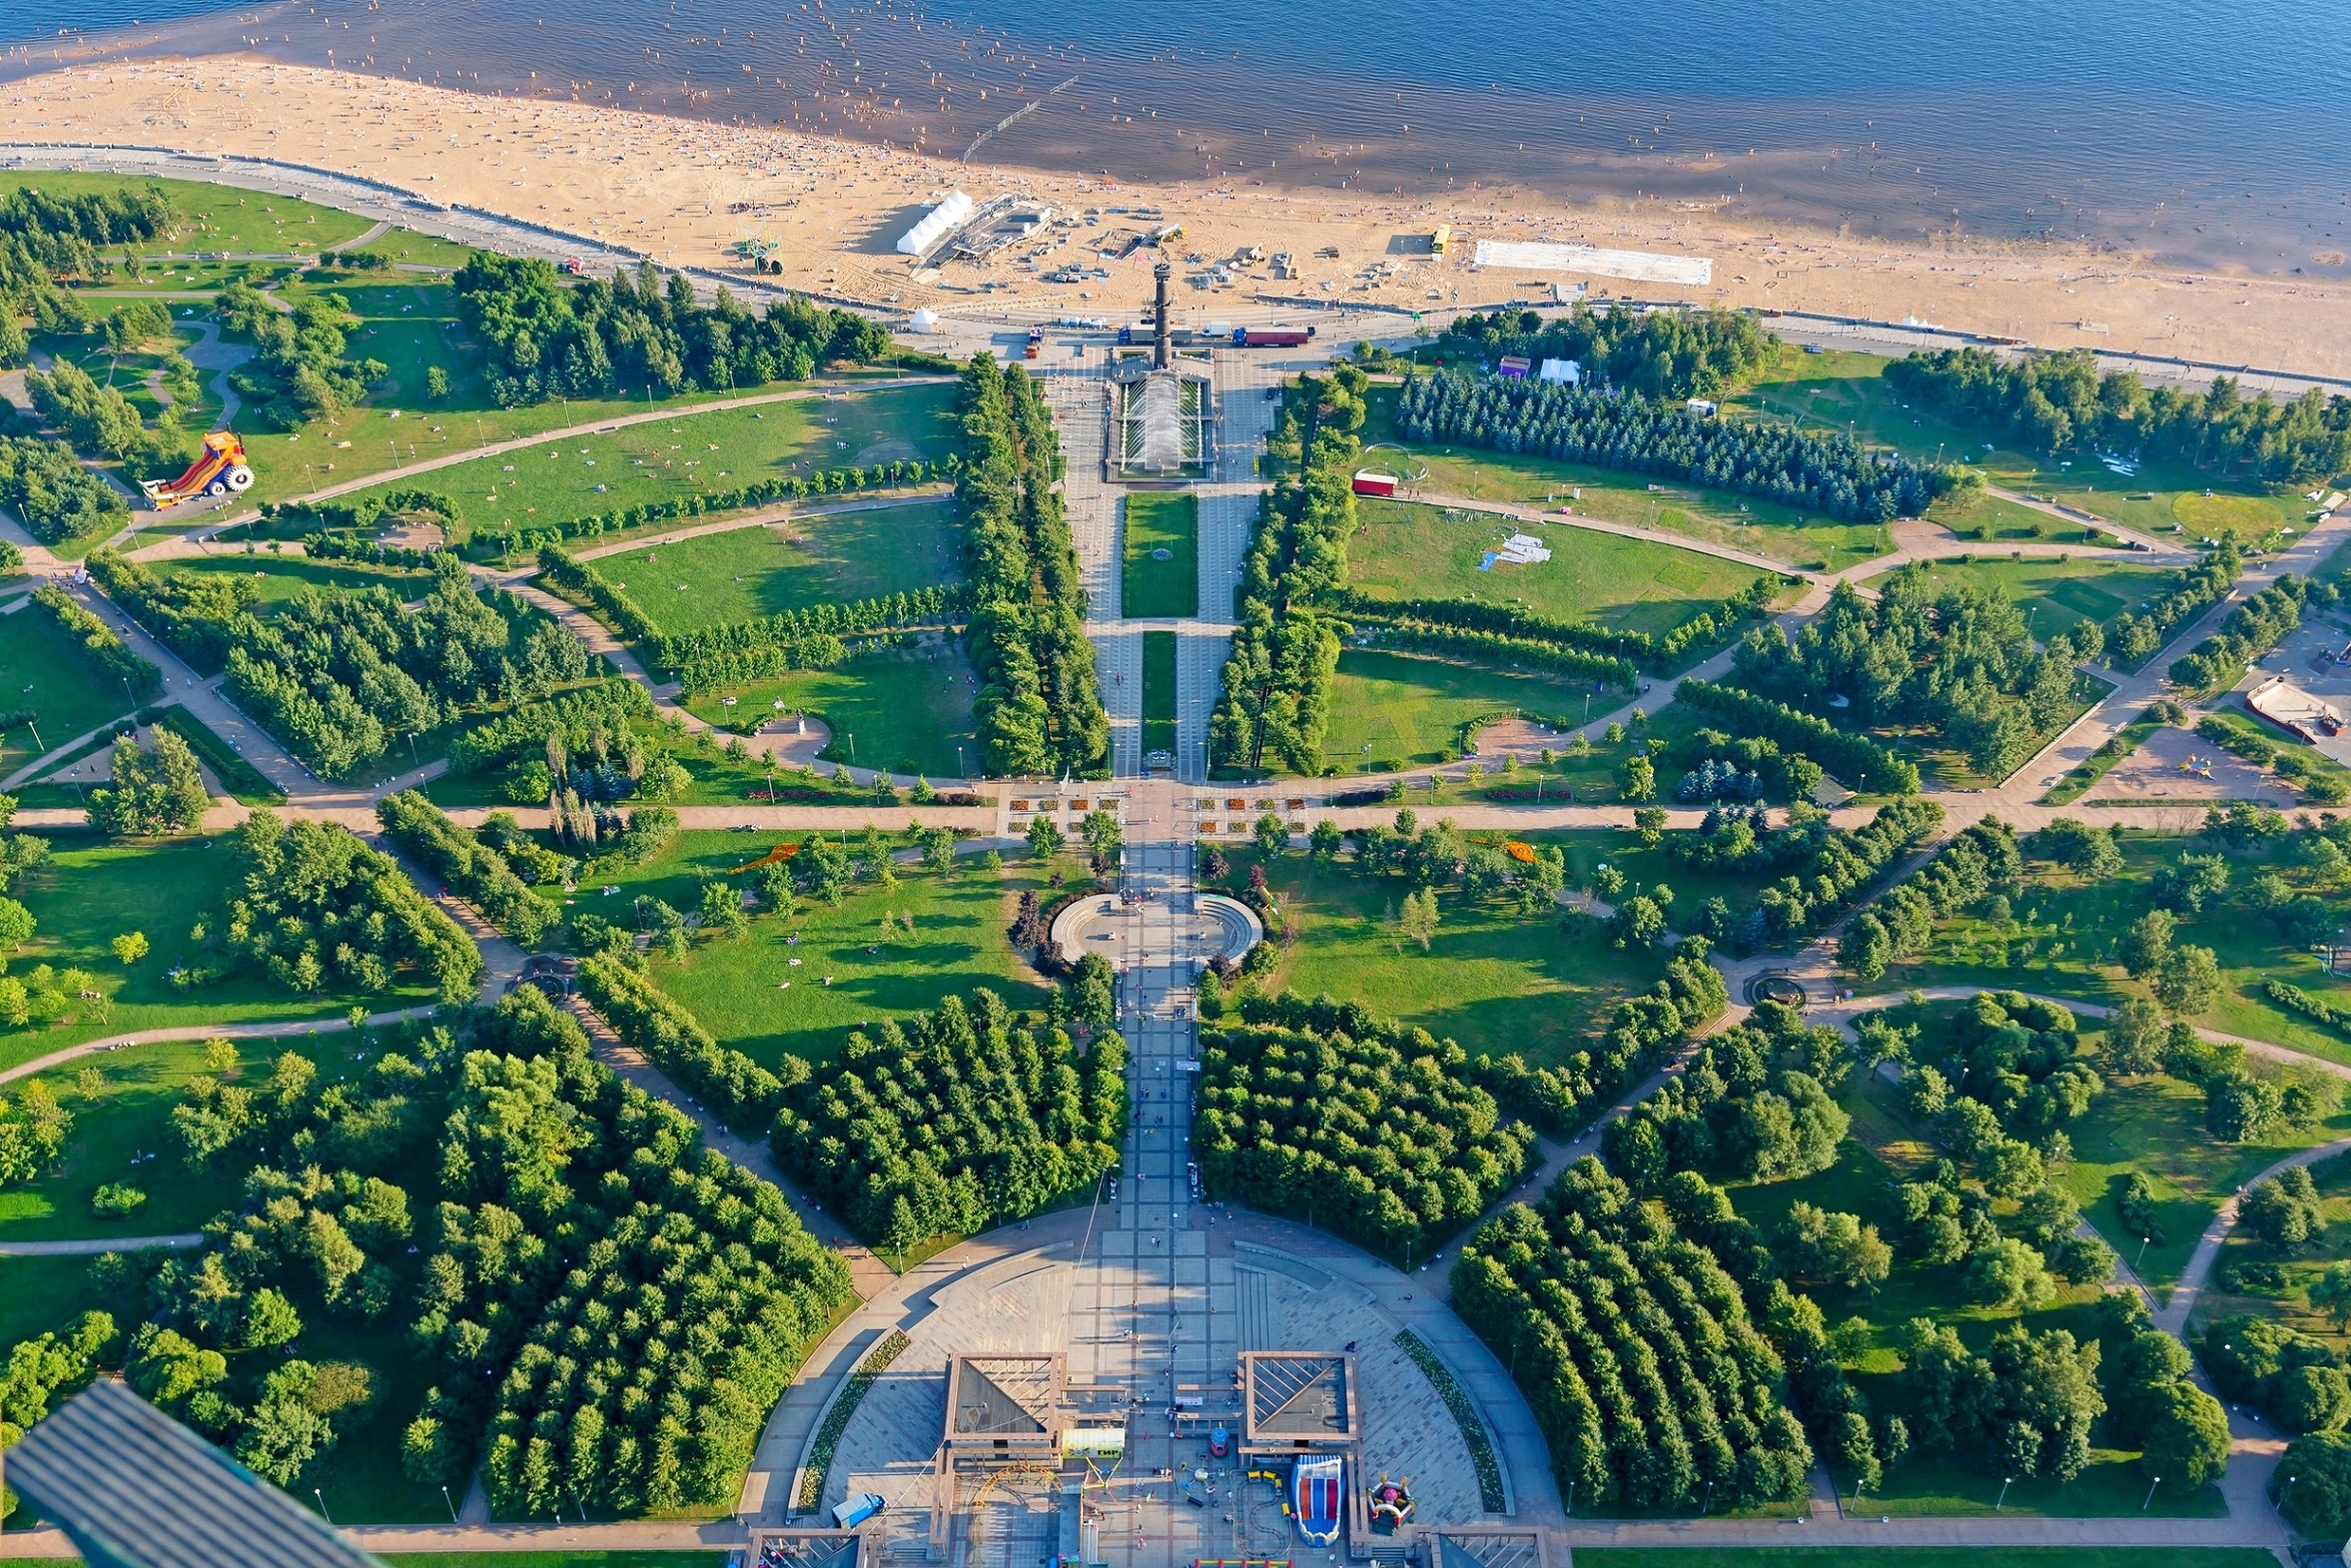 парк 300 летия петербурга